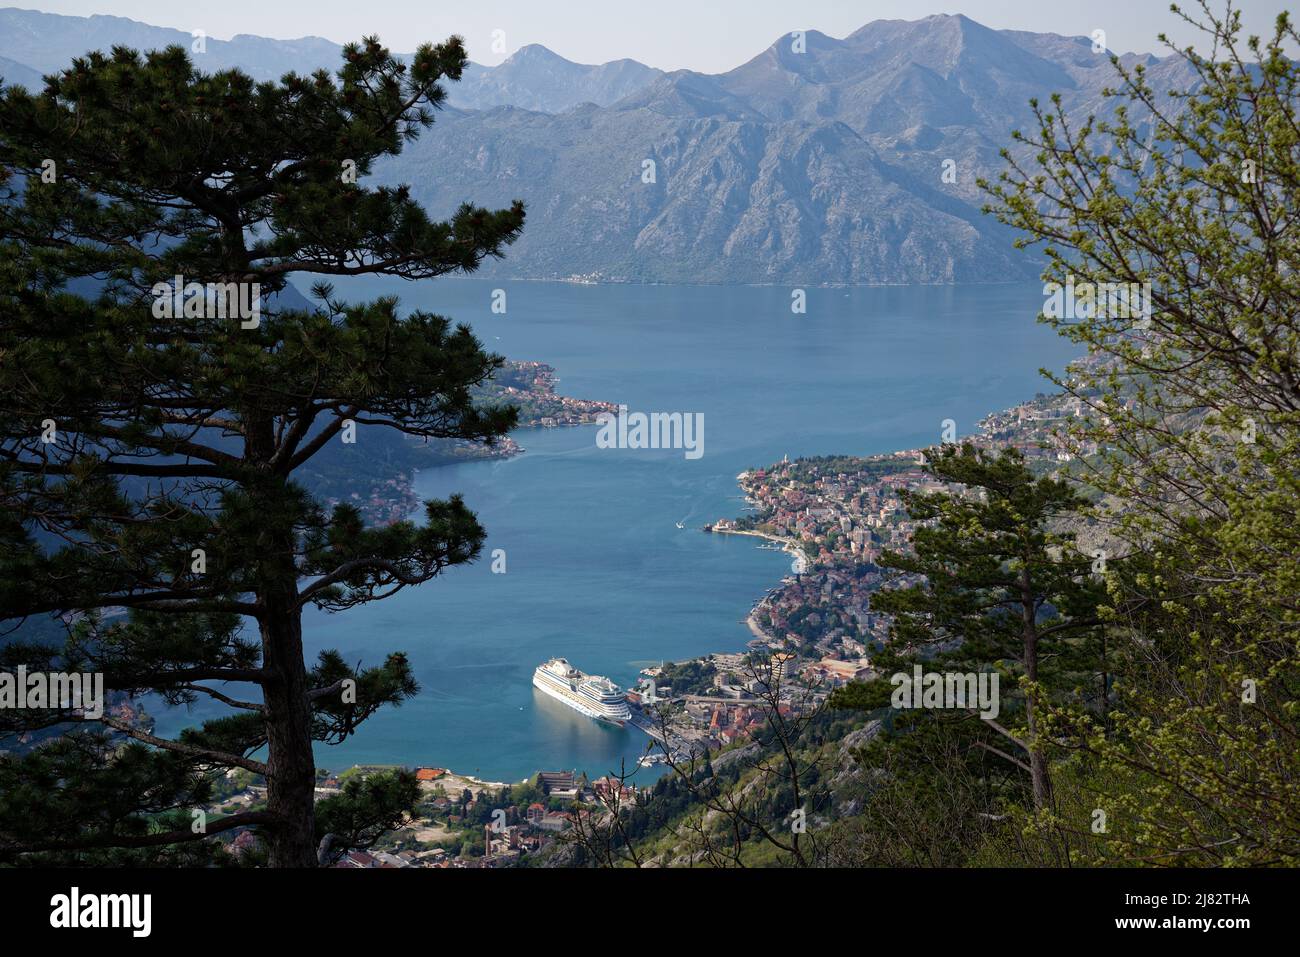 Vista de la bahía de Kotor, Montenegro. Crucero en Kotor. Pueblos y la ciudad de Kotor en el borde del mar con espectaculares montañas circundantes. Foto de stock